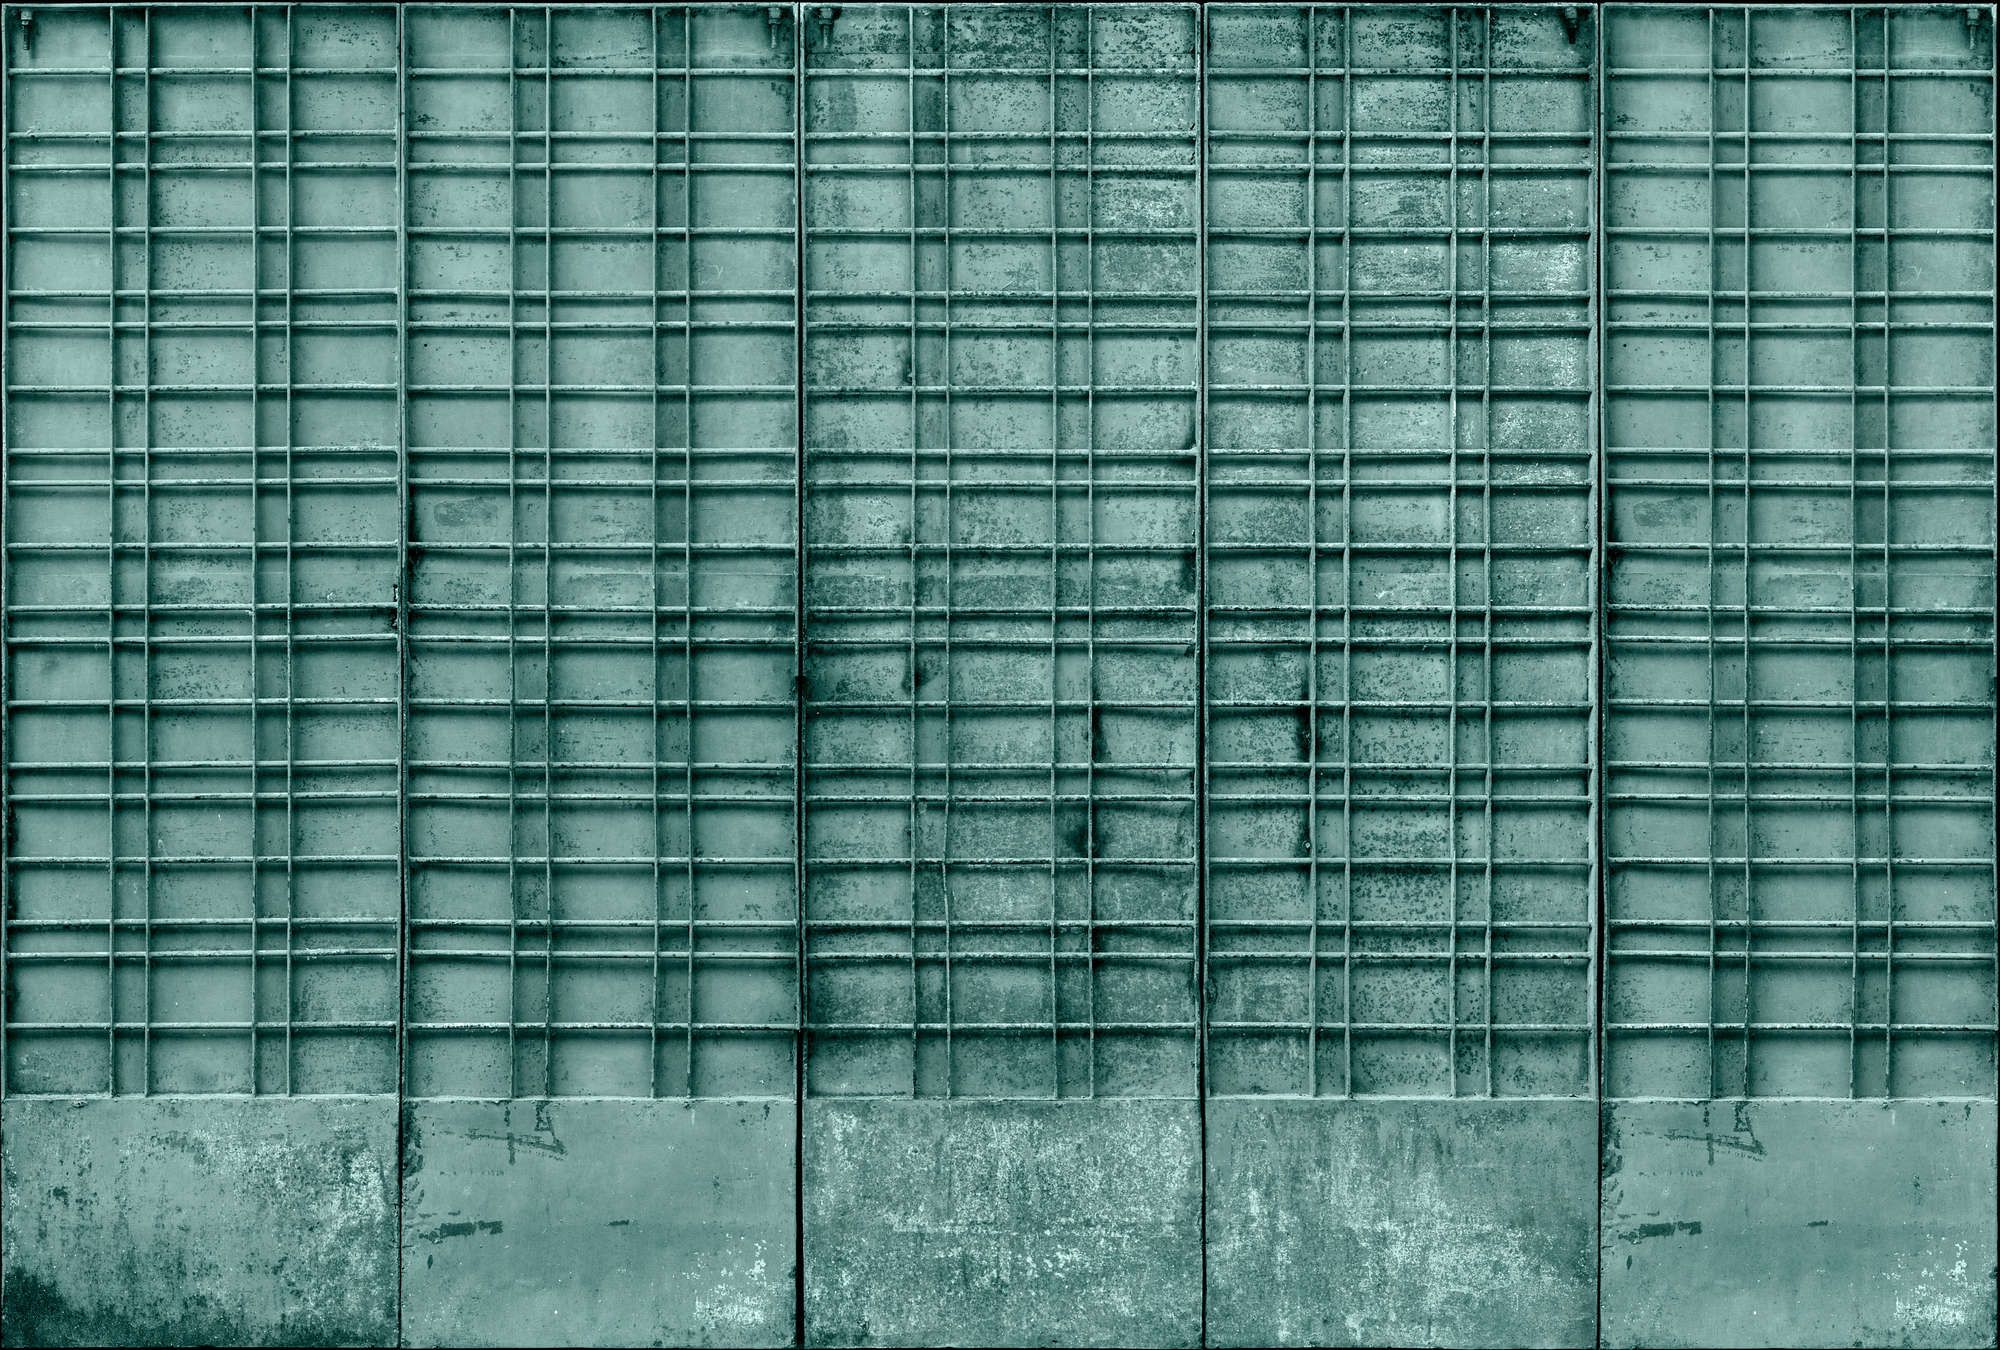             Fotomural »bangalore« - Primer plano de una puerta de metal color petróleo con decoraciones rectangulares - Tela no tejida lisa, ligeramente nacarada
        